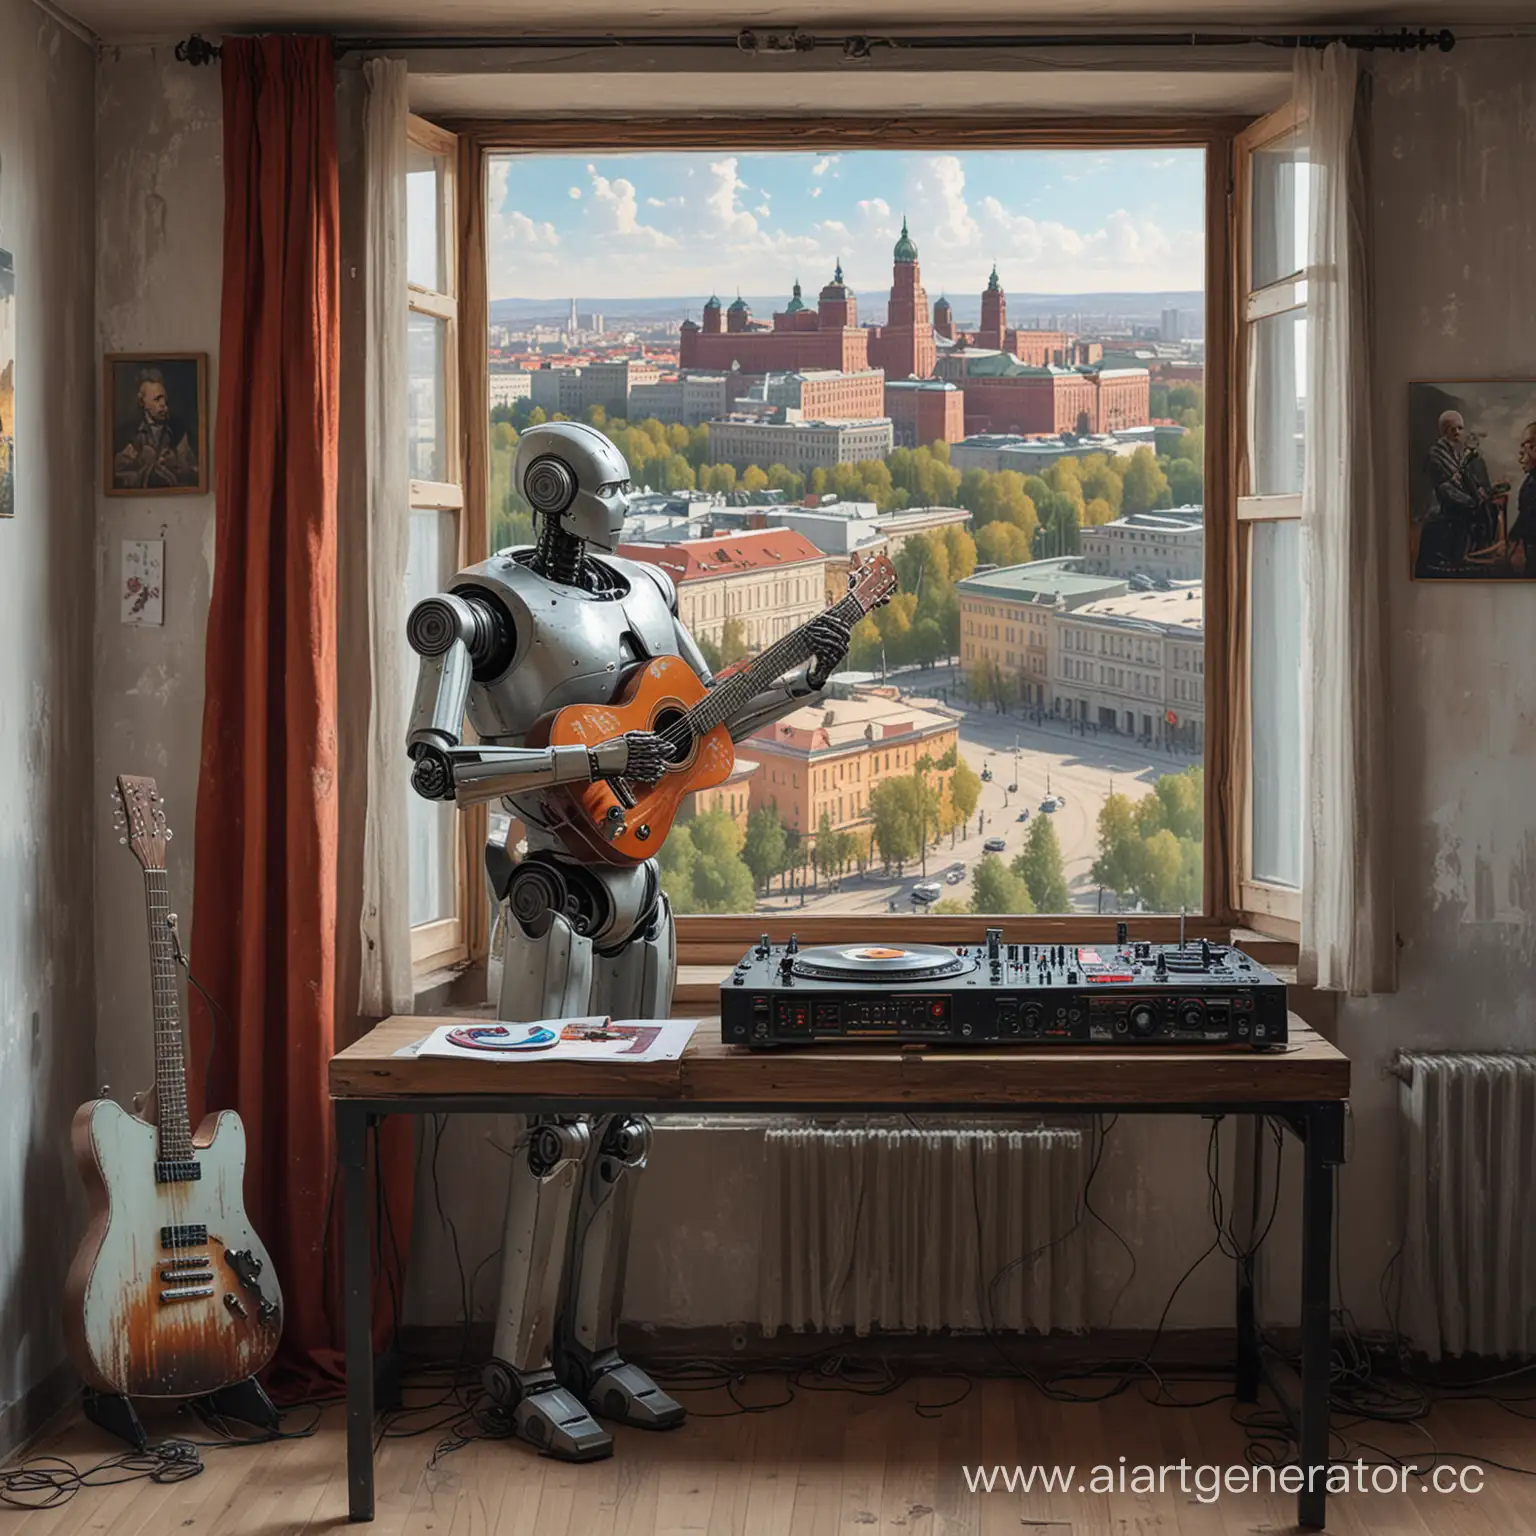 робот с искусственным интеллектом играет на диджейском пульте - рядом стоит гитара а за окном виды советского города. На стене картина с Лениным